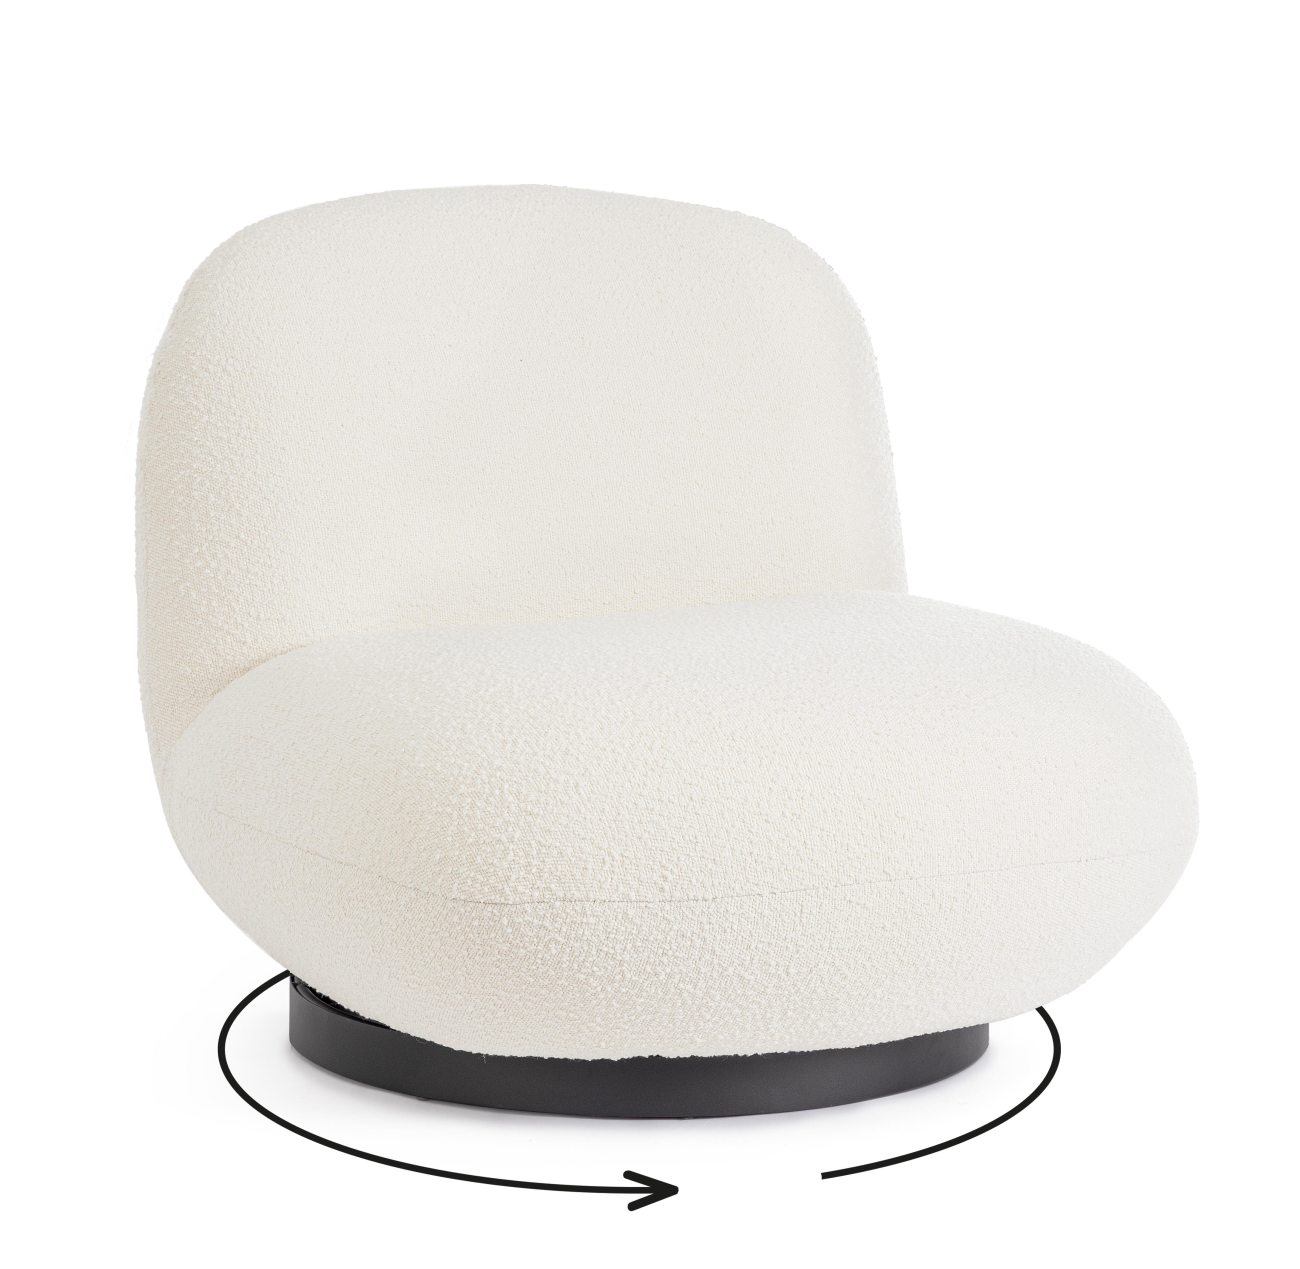 Der Sessel Margot überzeugt mit seinem modernen Stil. Gefertigt wurde er aus Bouclè-Stoff, welcher einen weißen Farbton besitzt. Das Gestell ist aus Metall und hat eine schwarze Farbe. Der Sessel verfügt über eine Drehfunktion.